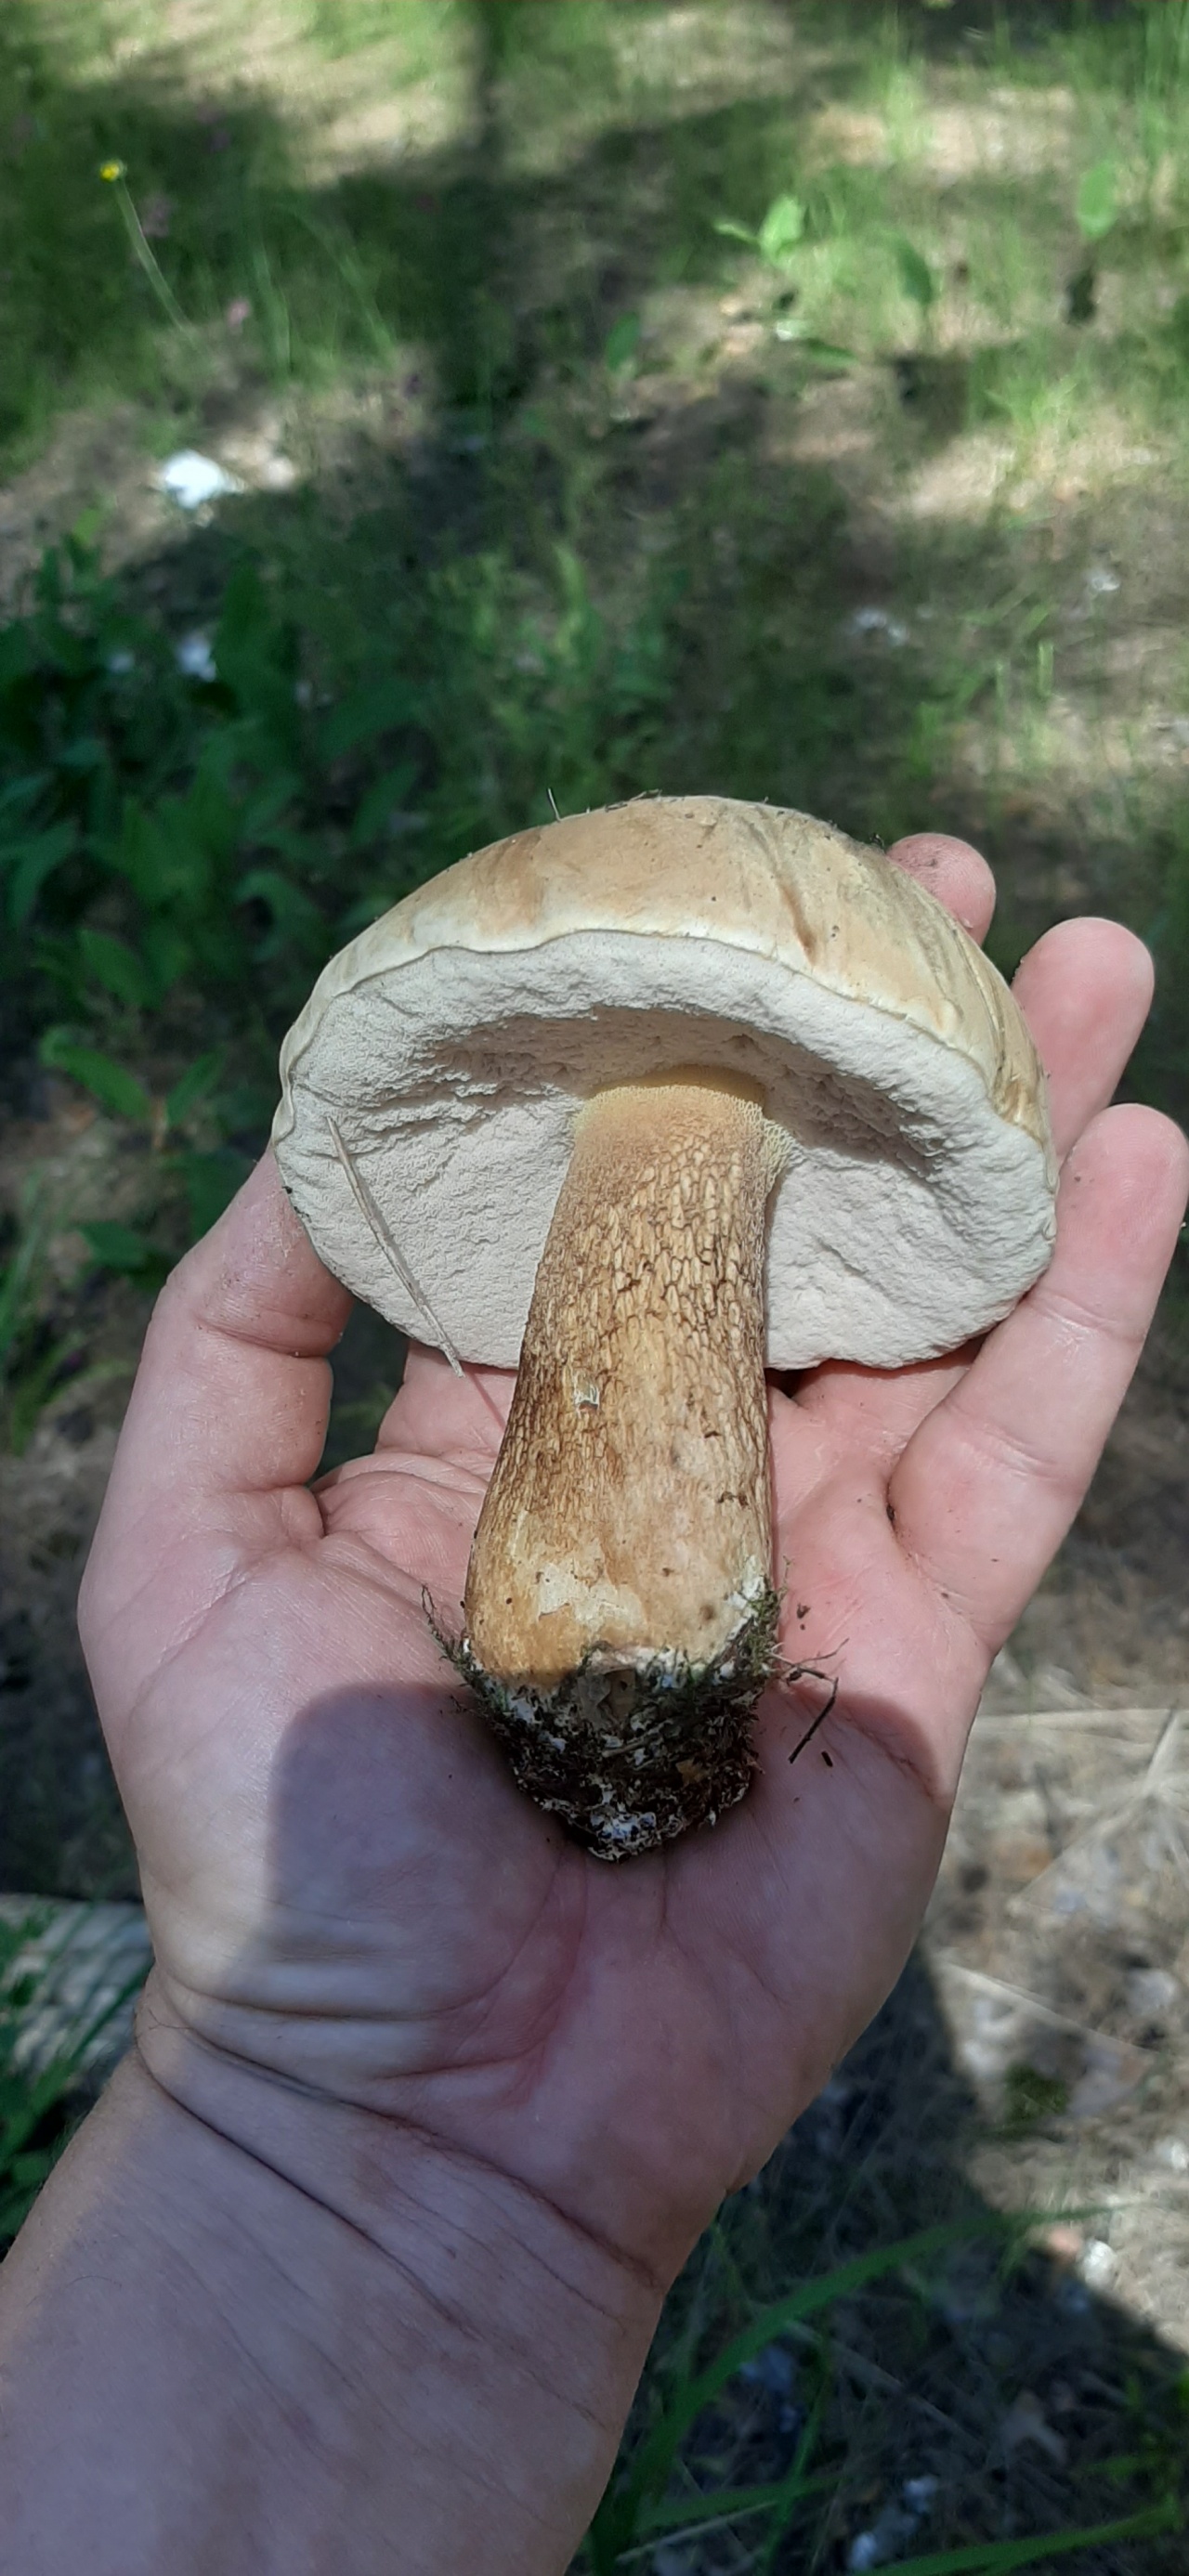 гриб боровик фото и белый гриб отличие